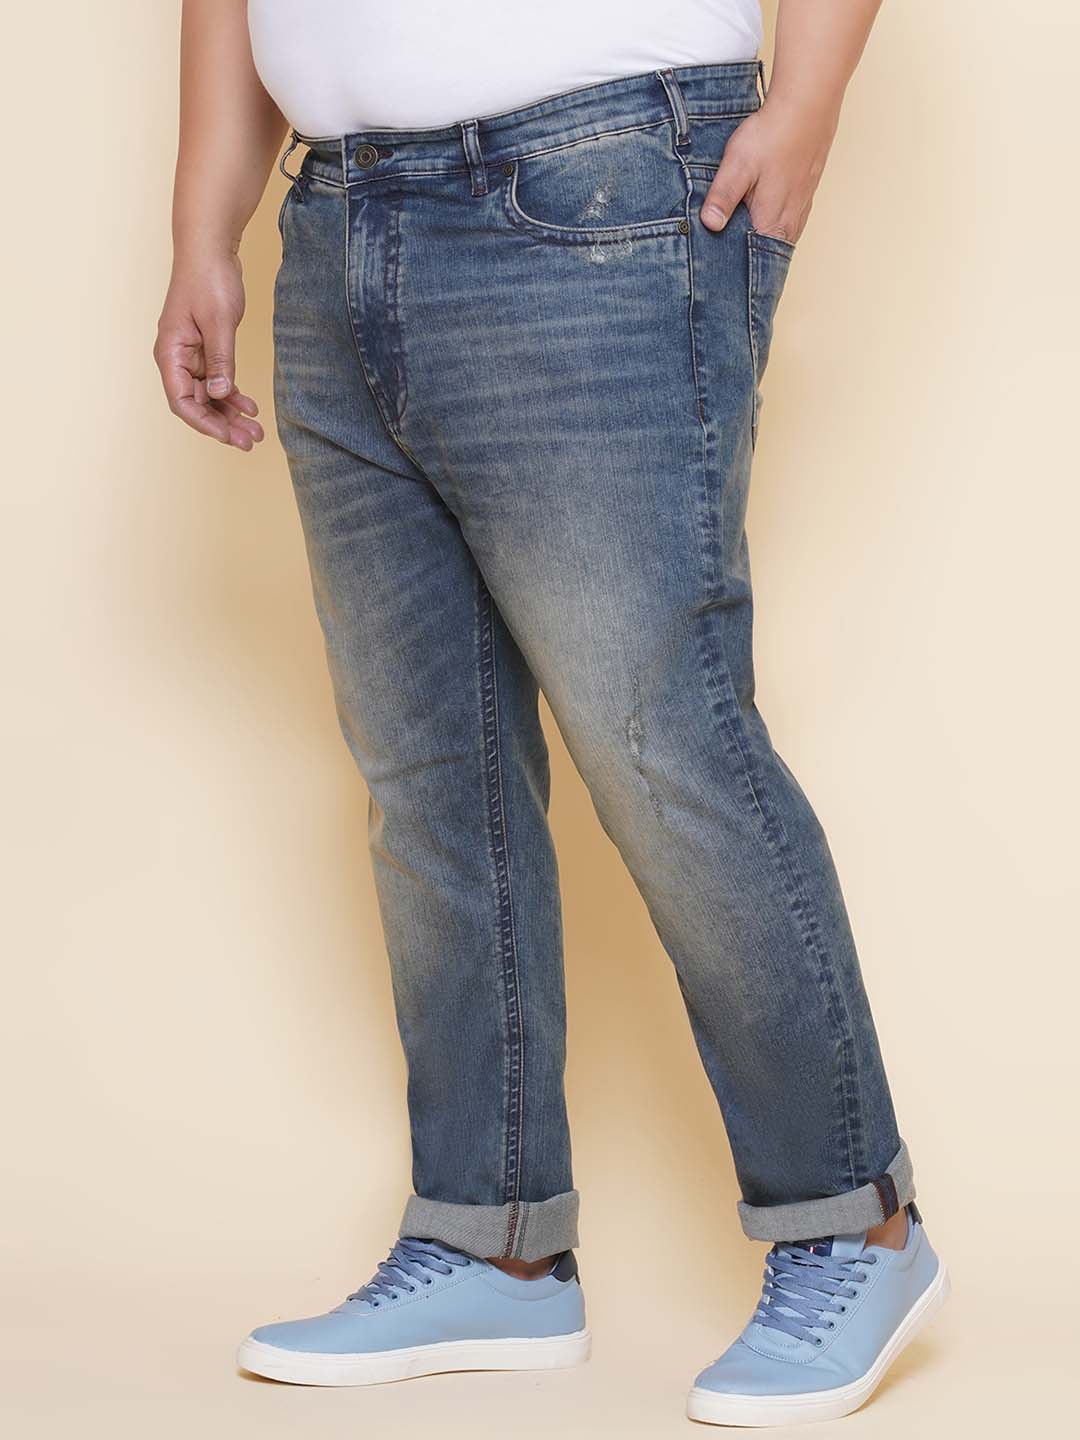 bottomwear/jeans/PJPJ60114/pjpj60114-4.jpg